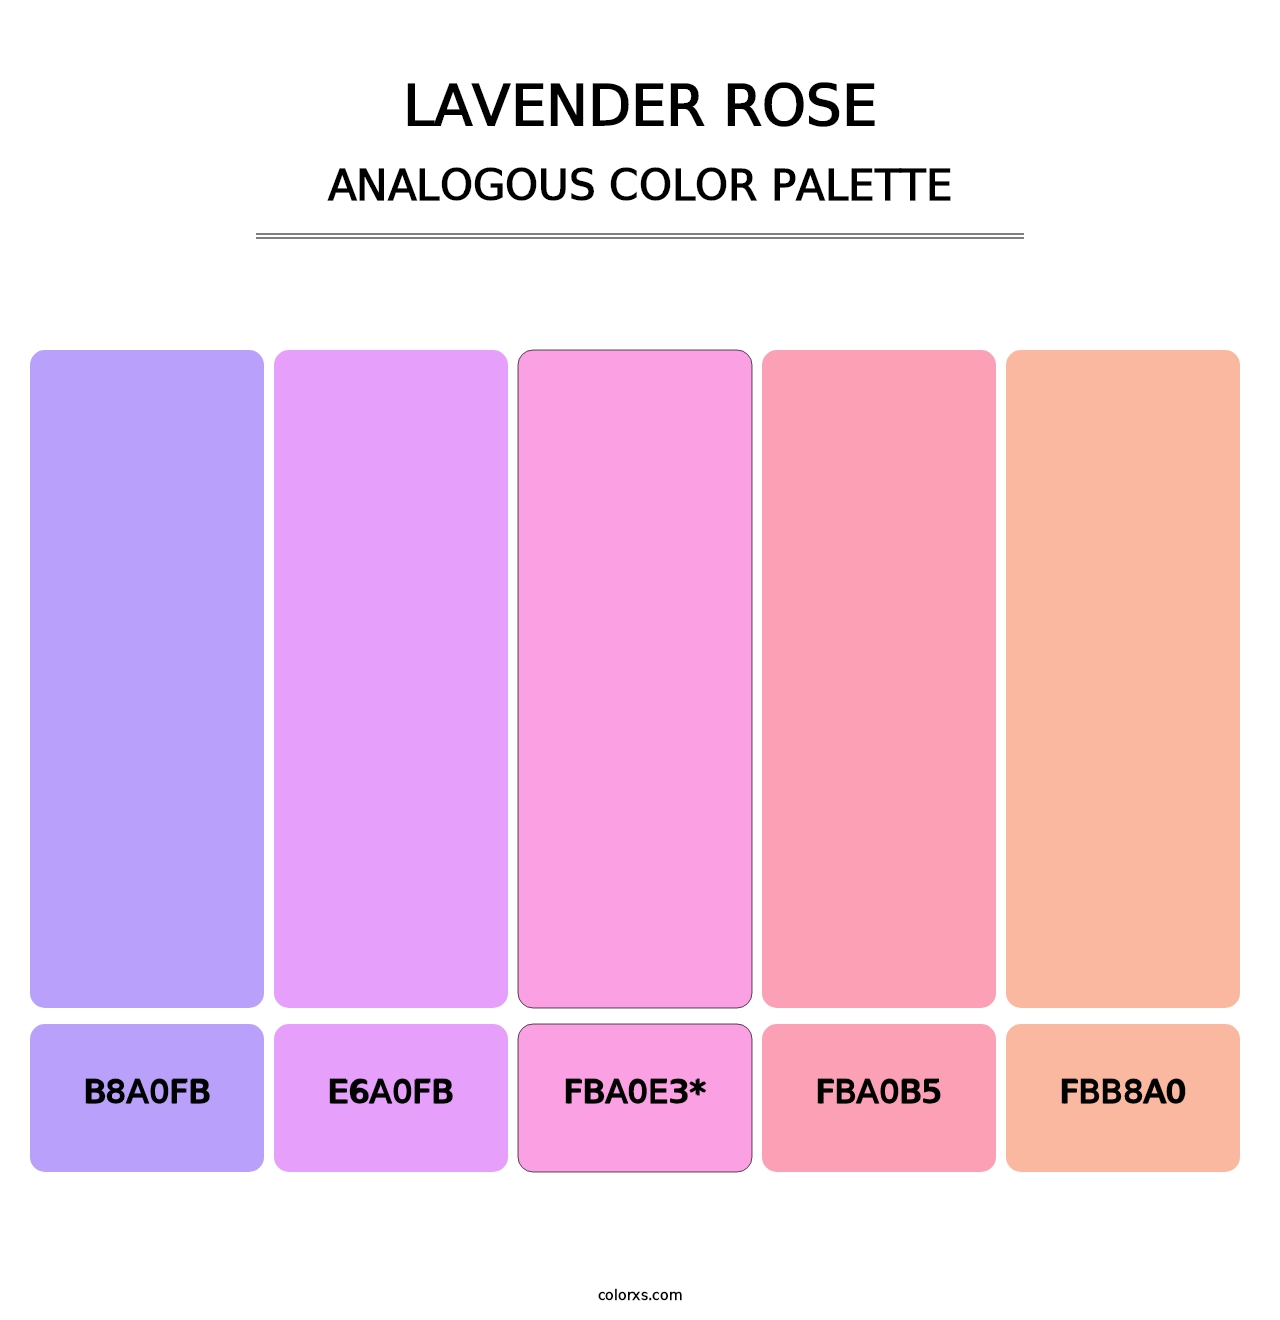 Lavender Rose - Analogous Color Palette